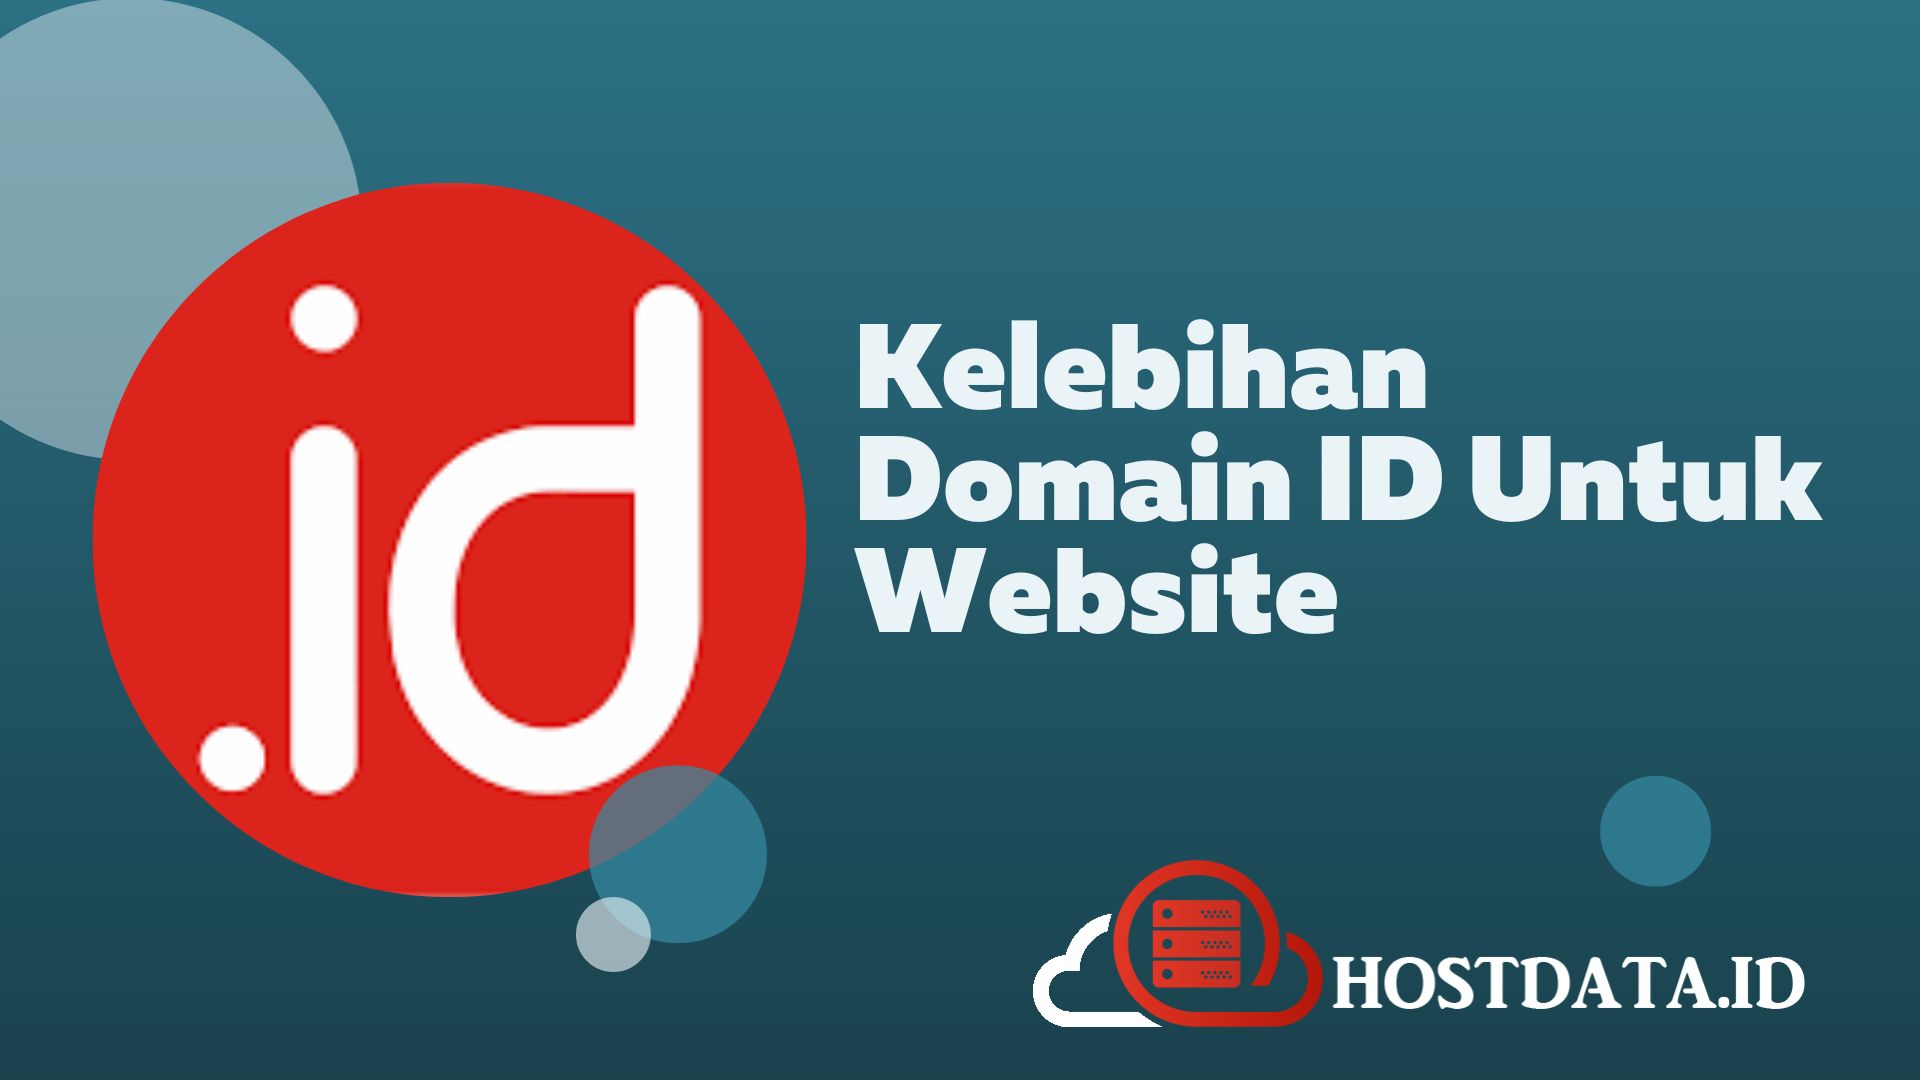 Kelebihan Domain ID Untuk Website